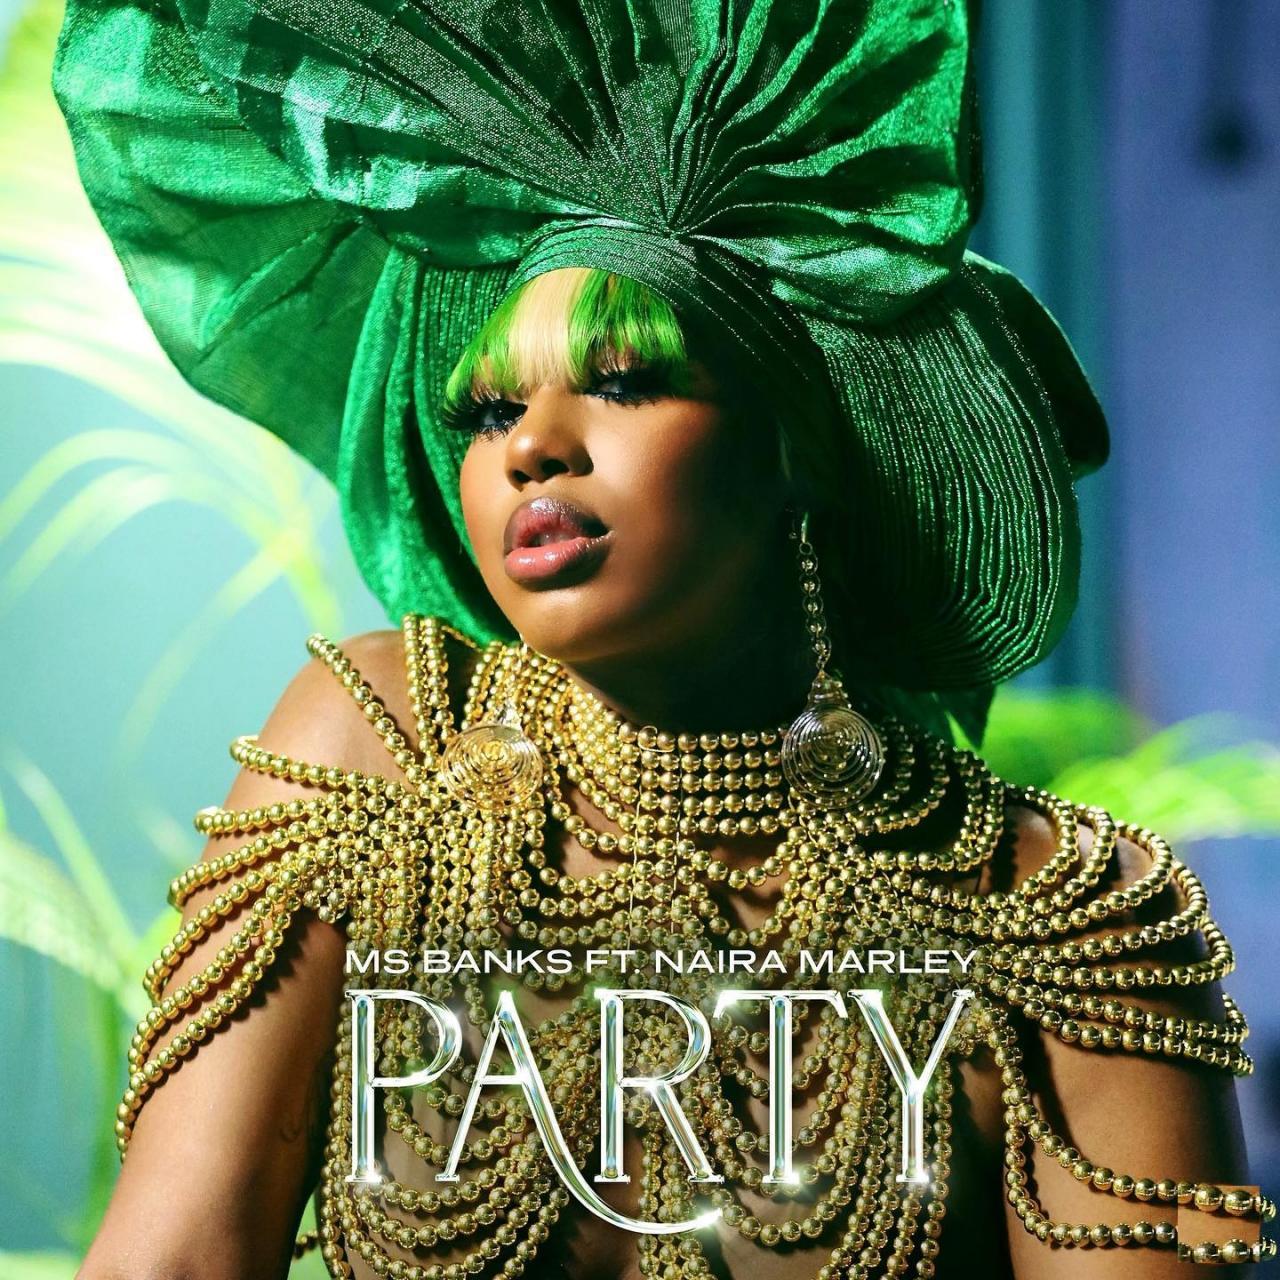 Ms Banks ft. Naira Marley – Party